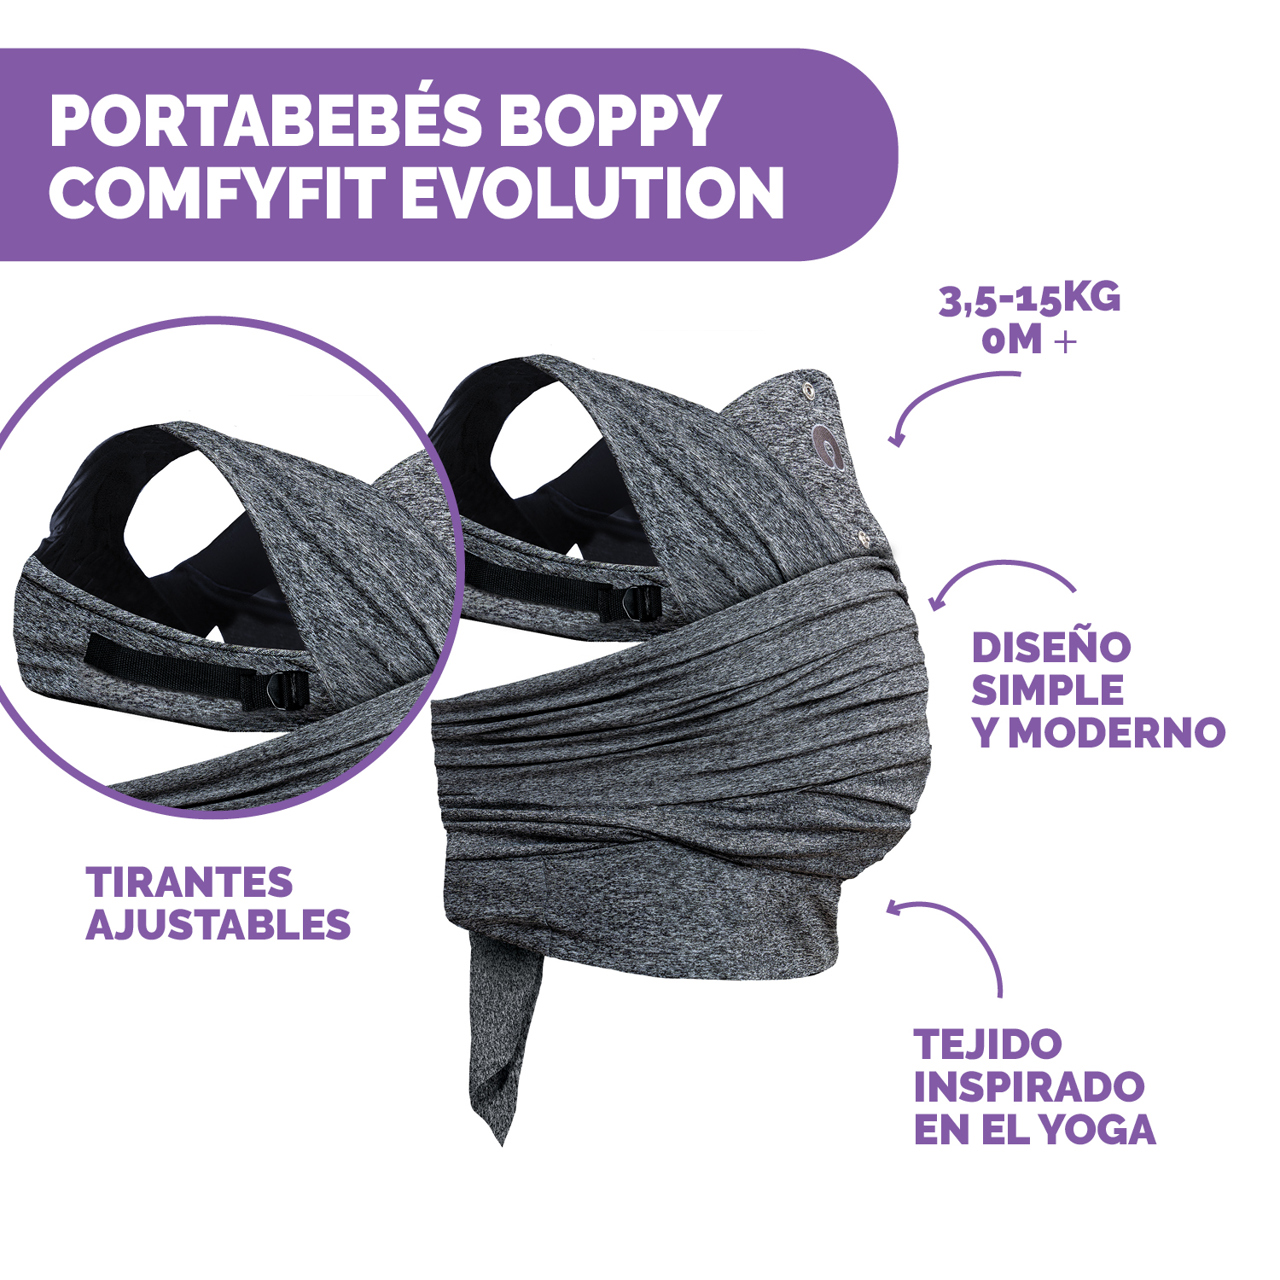 Boppy Comfyfit Evolution Fular Portabebés image number 4